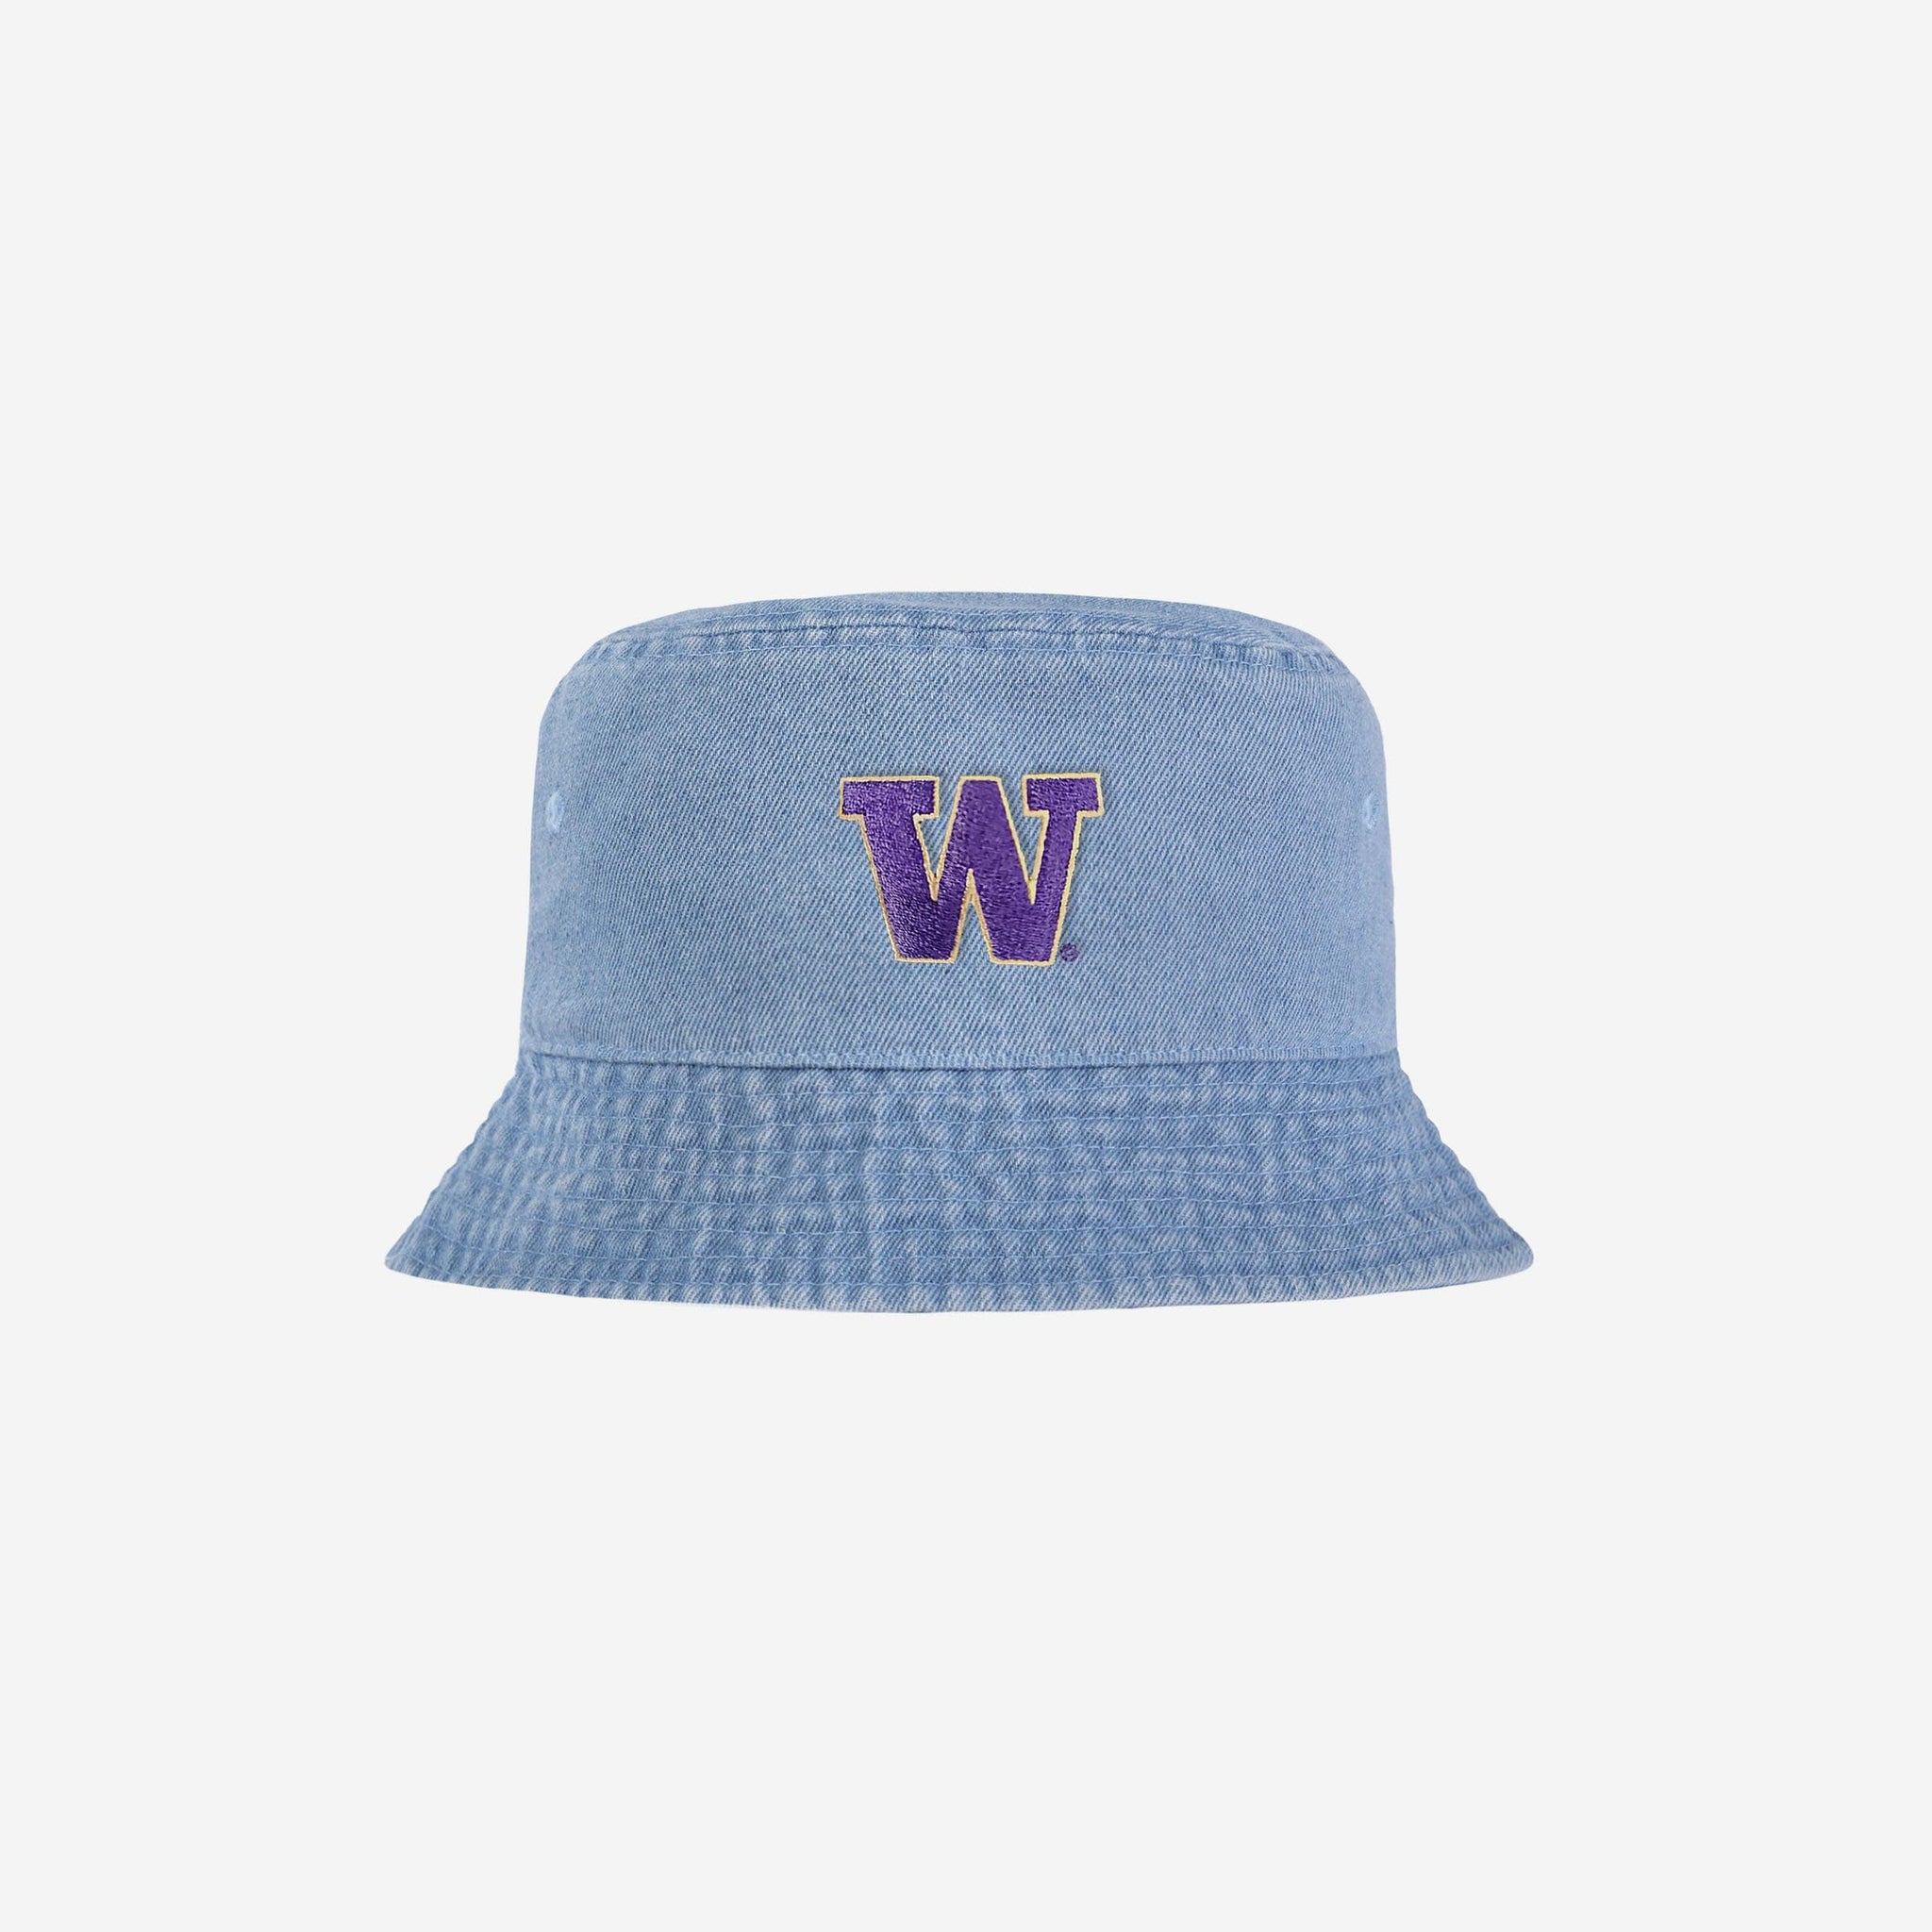 FOCO Washington Huskies NCAA Solid Bucket Hat